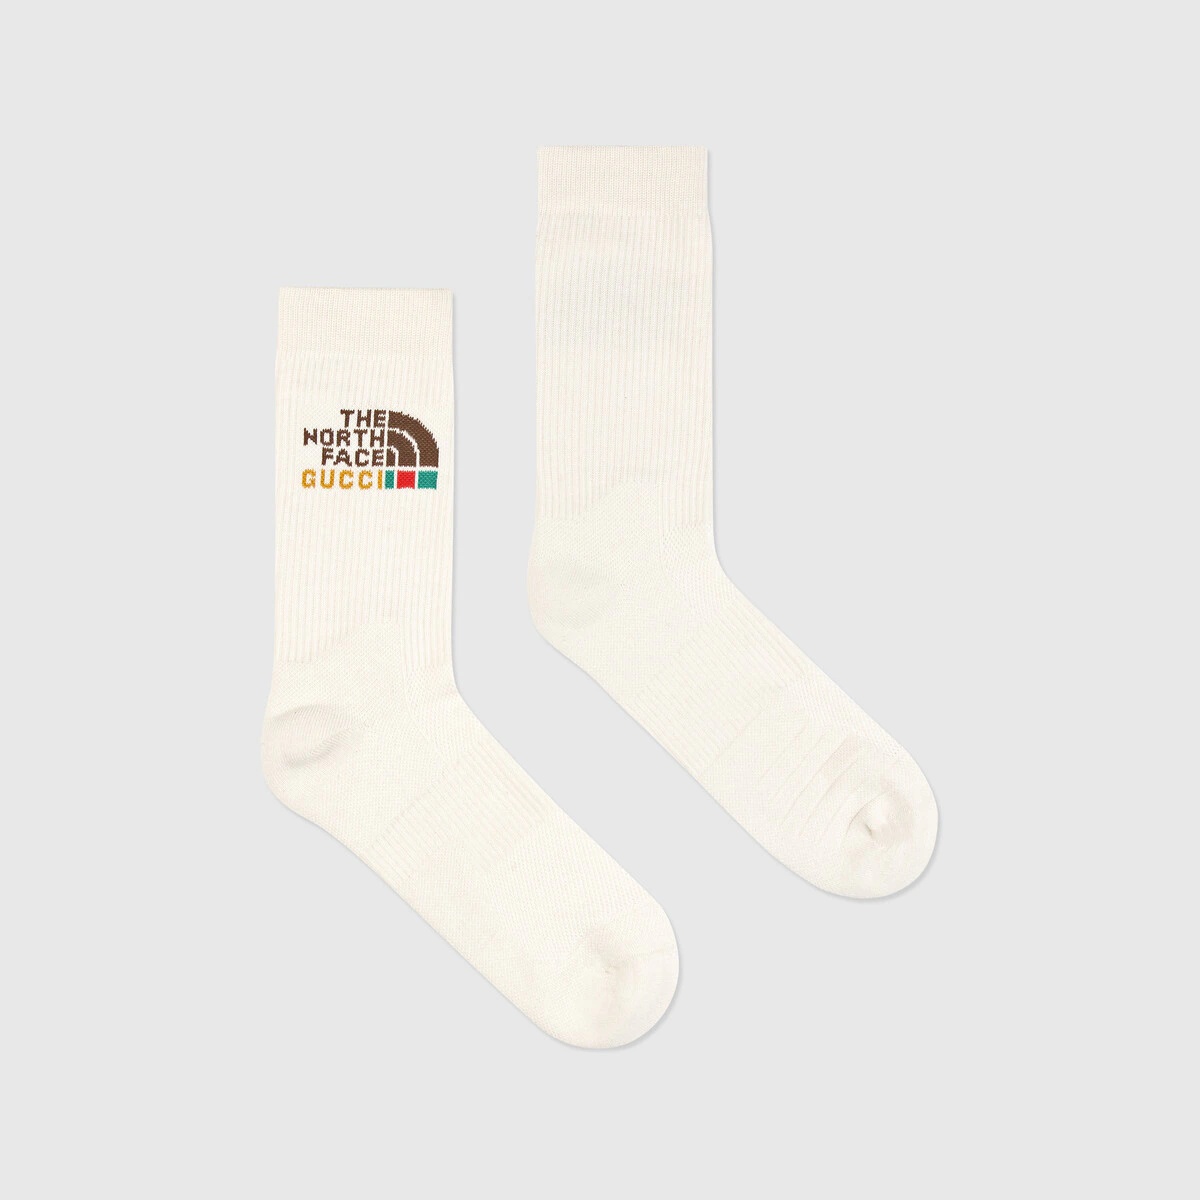 The North Face x Gucci cotton socks - 2